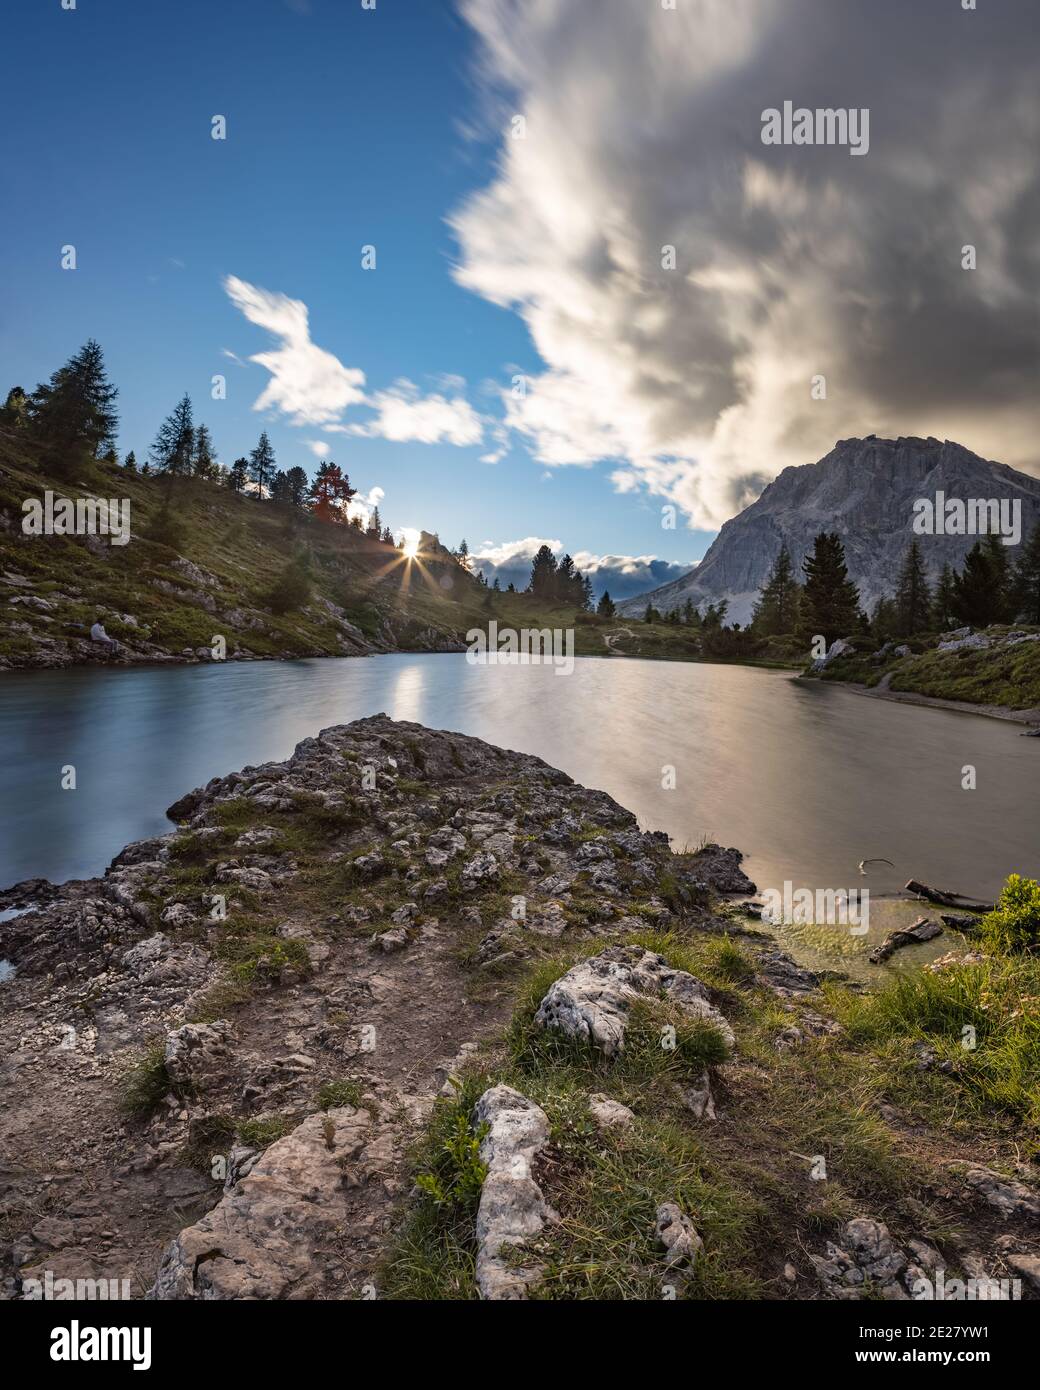 Vue panoramique sur le mont Lagazuoi et le lac Limides en été, à Cortina d'Ampezzo, dans les Dolomites italiennes Banque D'Images